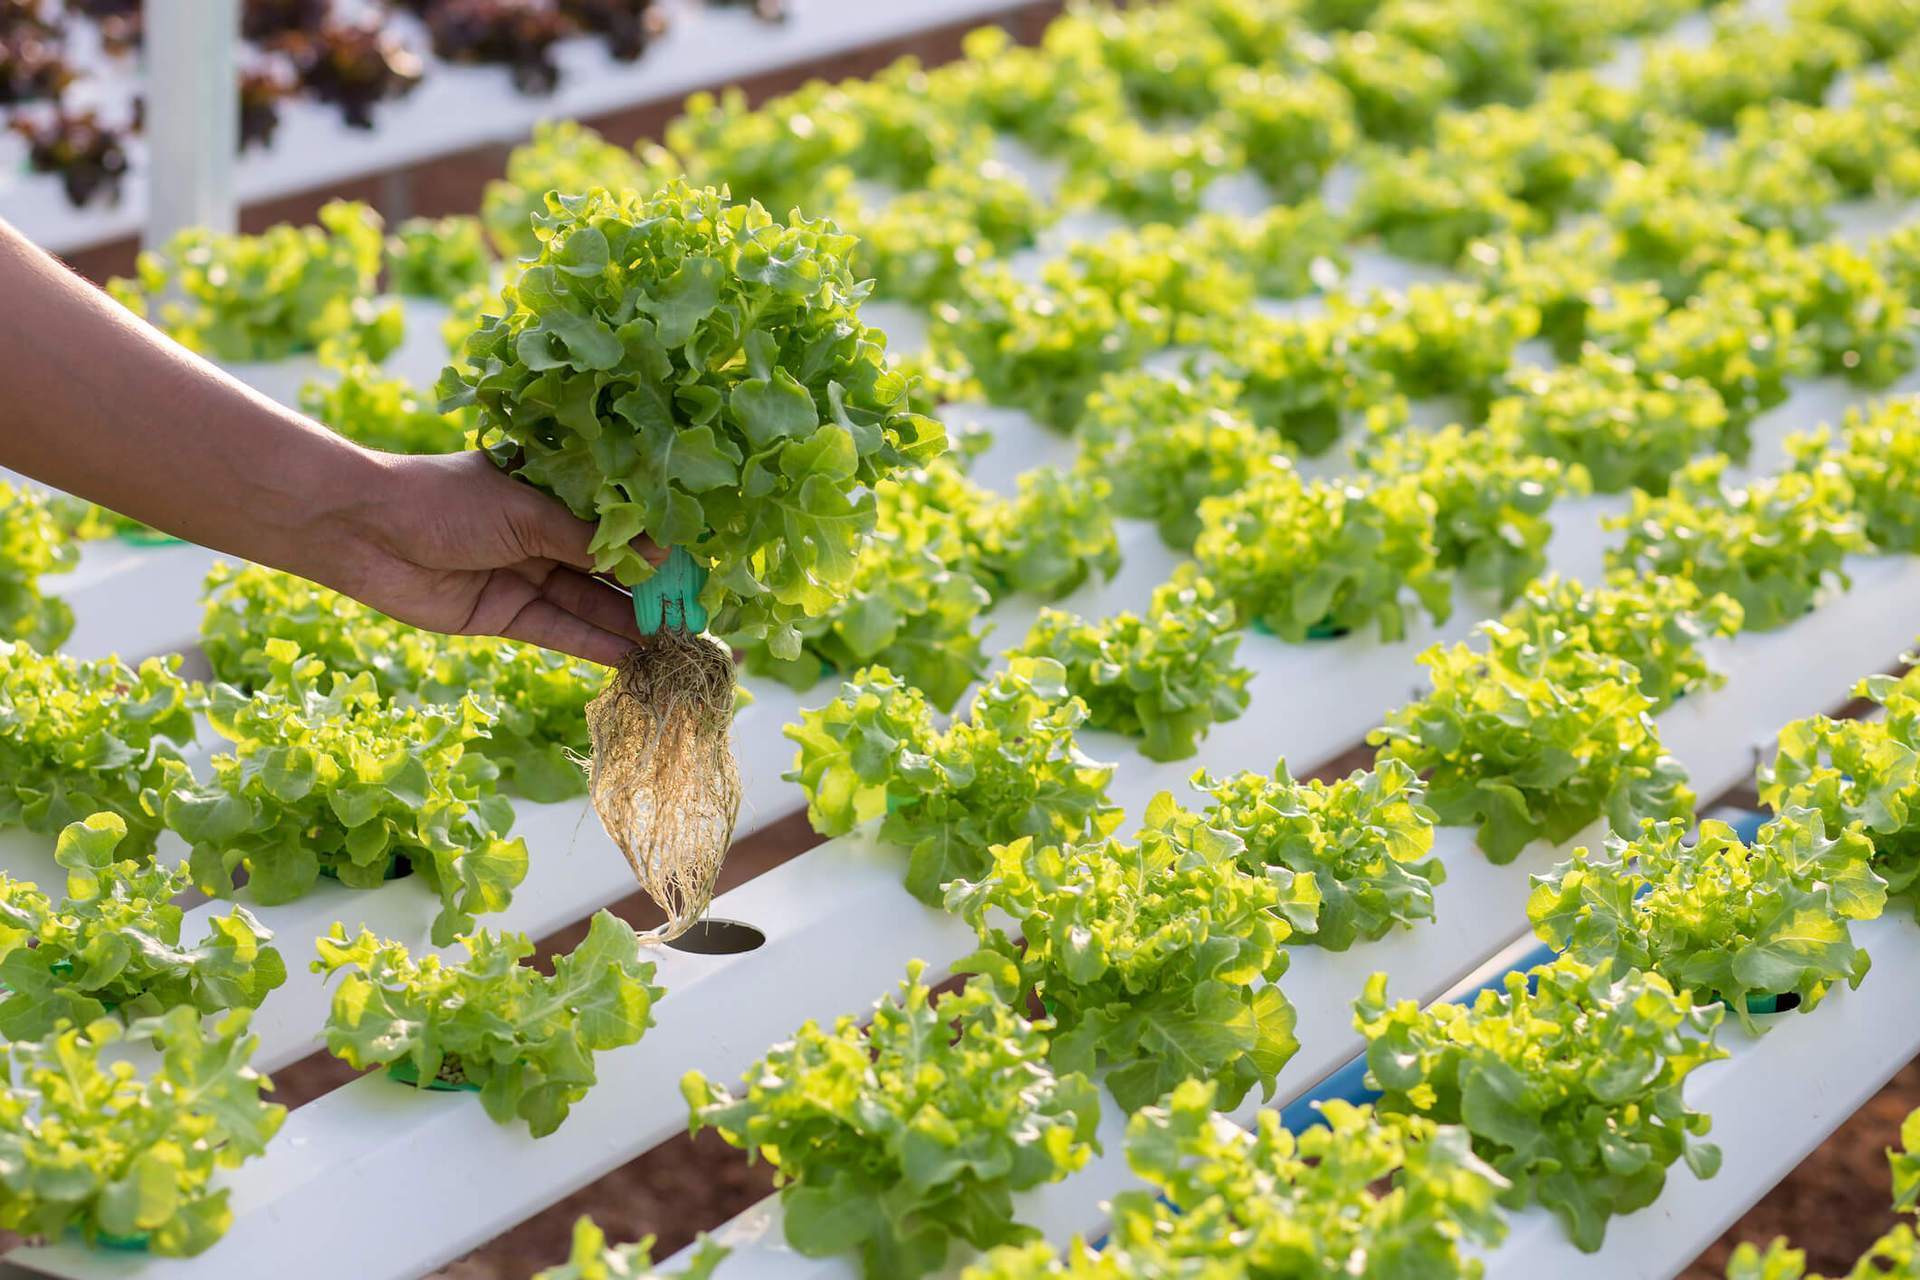 Как вырастить салат на подоконнике даже новичку. салат рассадным способом: сроки посева, уход, пересадка в грунт